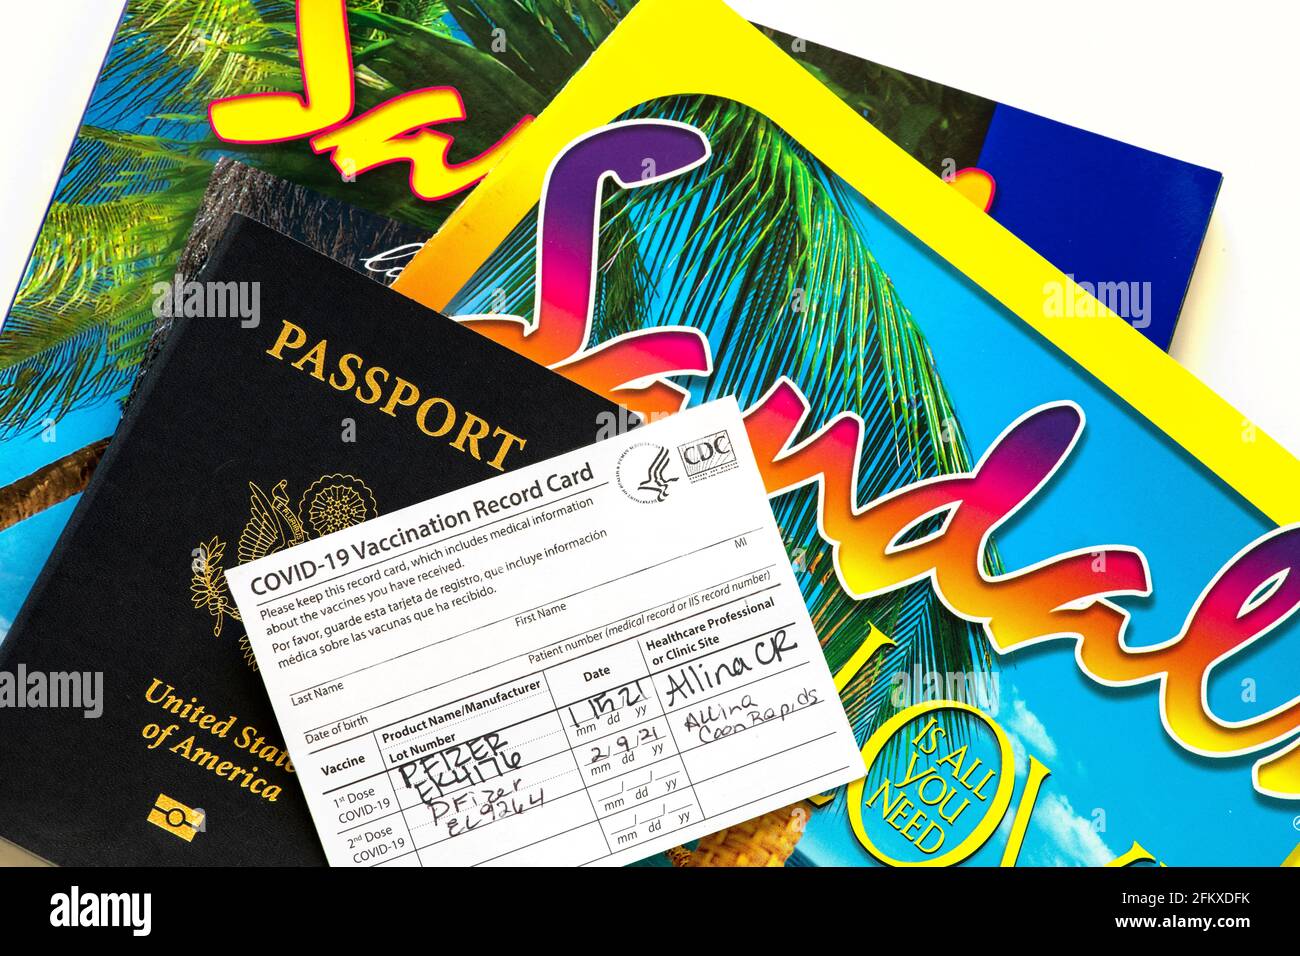 Minnesota; EE. UU. Tarjeta de registro de vacunación Covid-19 con pasaporte y folletos de viajes internacionales de Sandal. Foto de stock